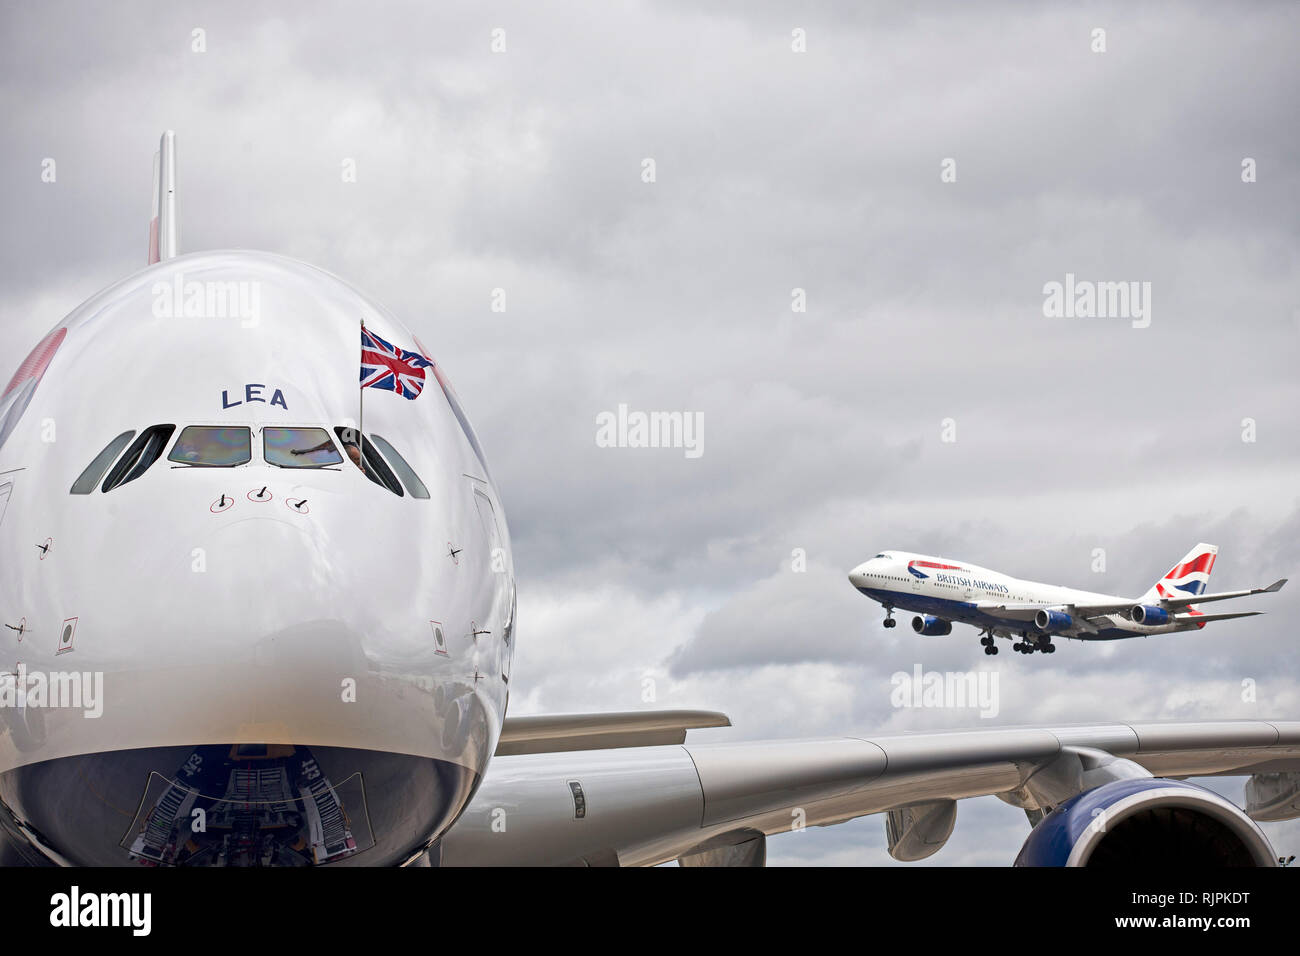 Un BA Boeing 747 terre (R) come un BA Airbus A380 (L) arriva presso l'aeroporto di Heathrow. Luglio 4, 2013. Foto Stock